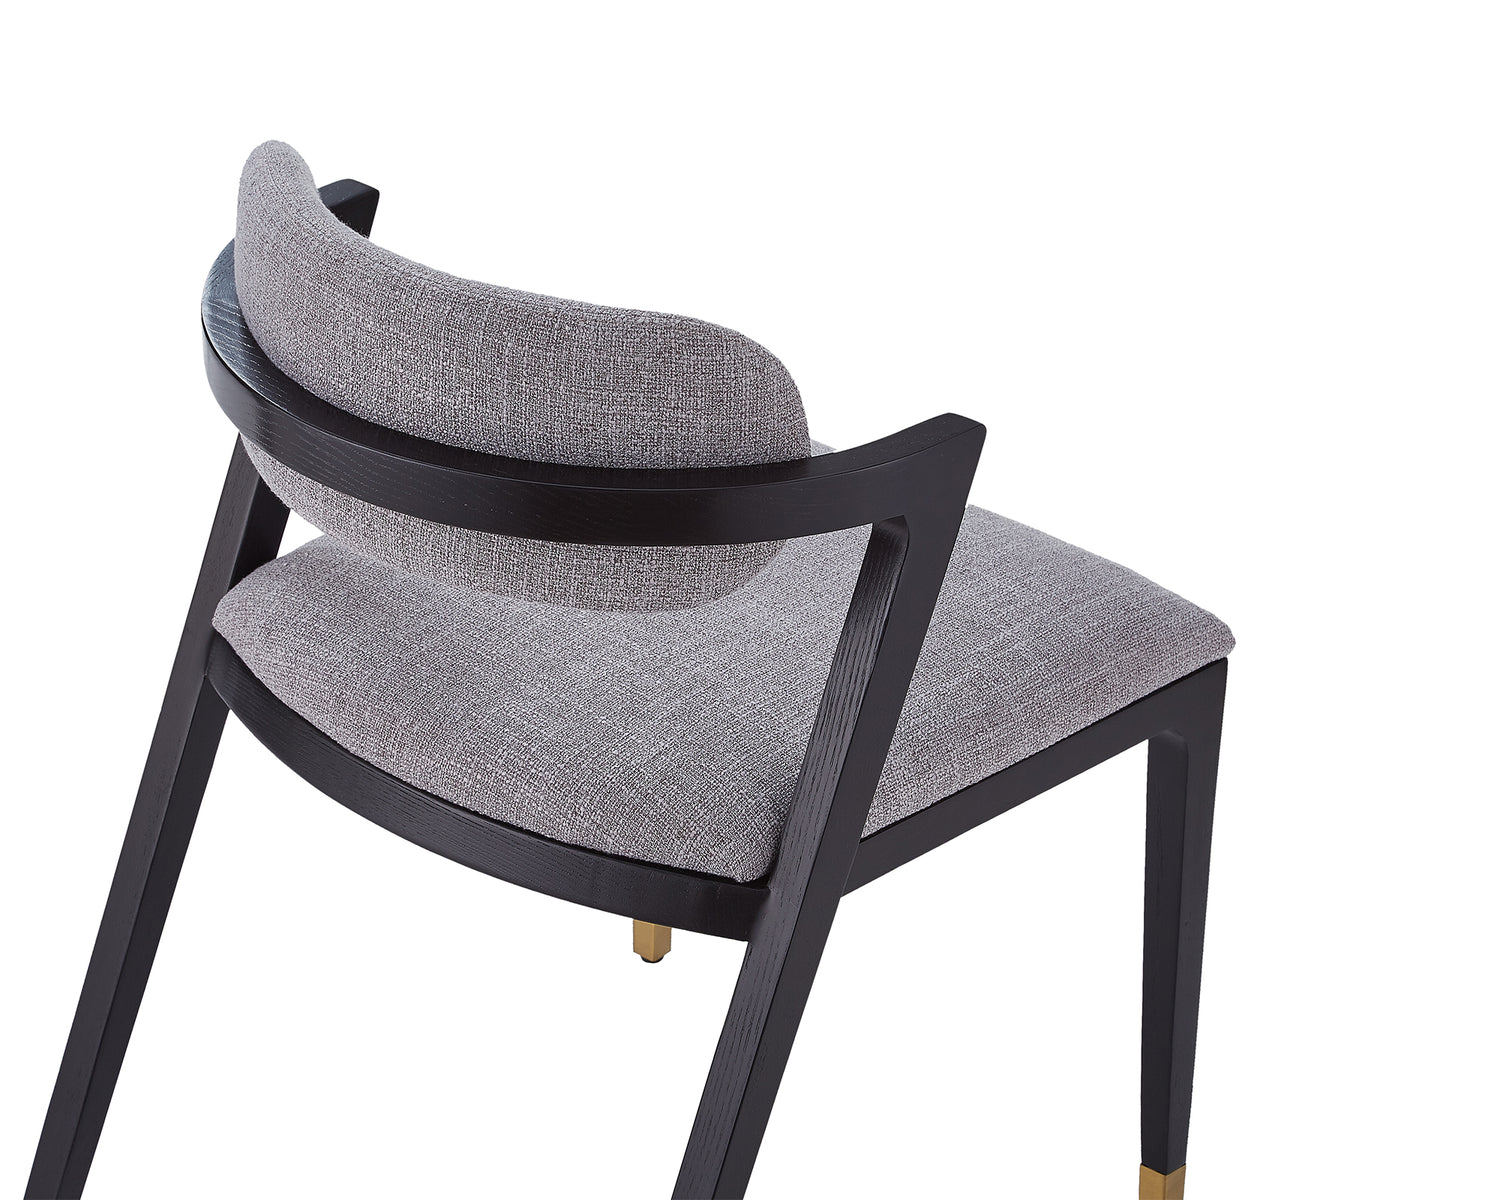 Greta dining chair – oscar ash